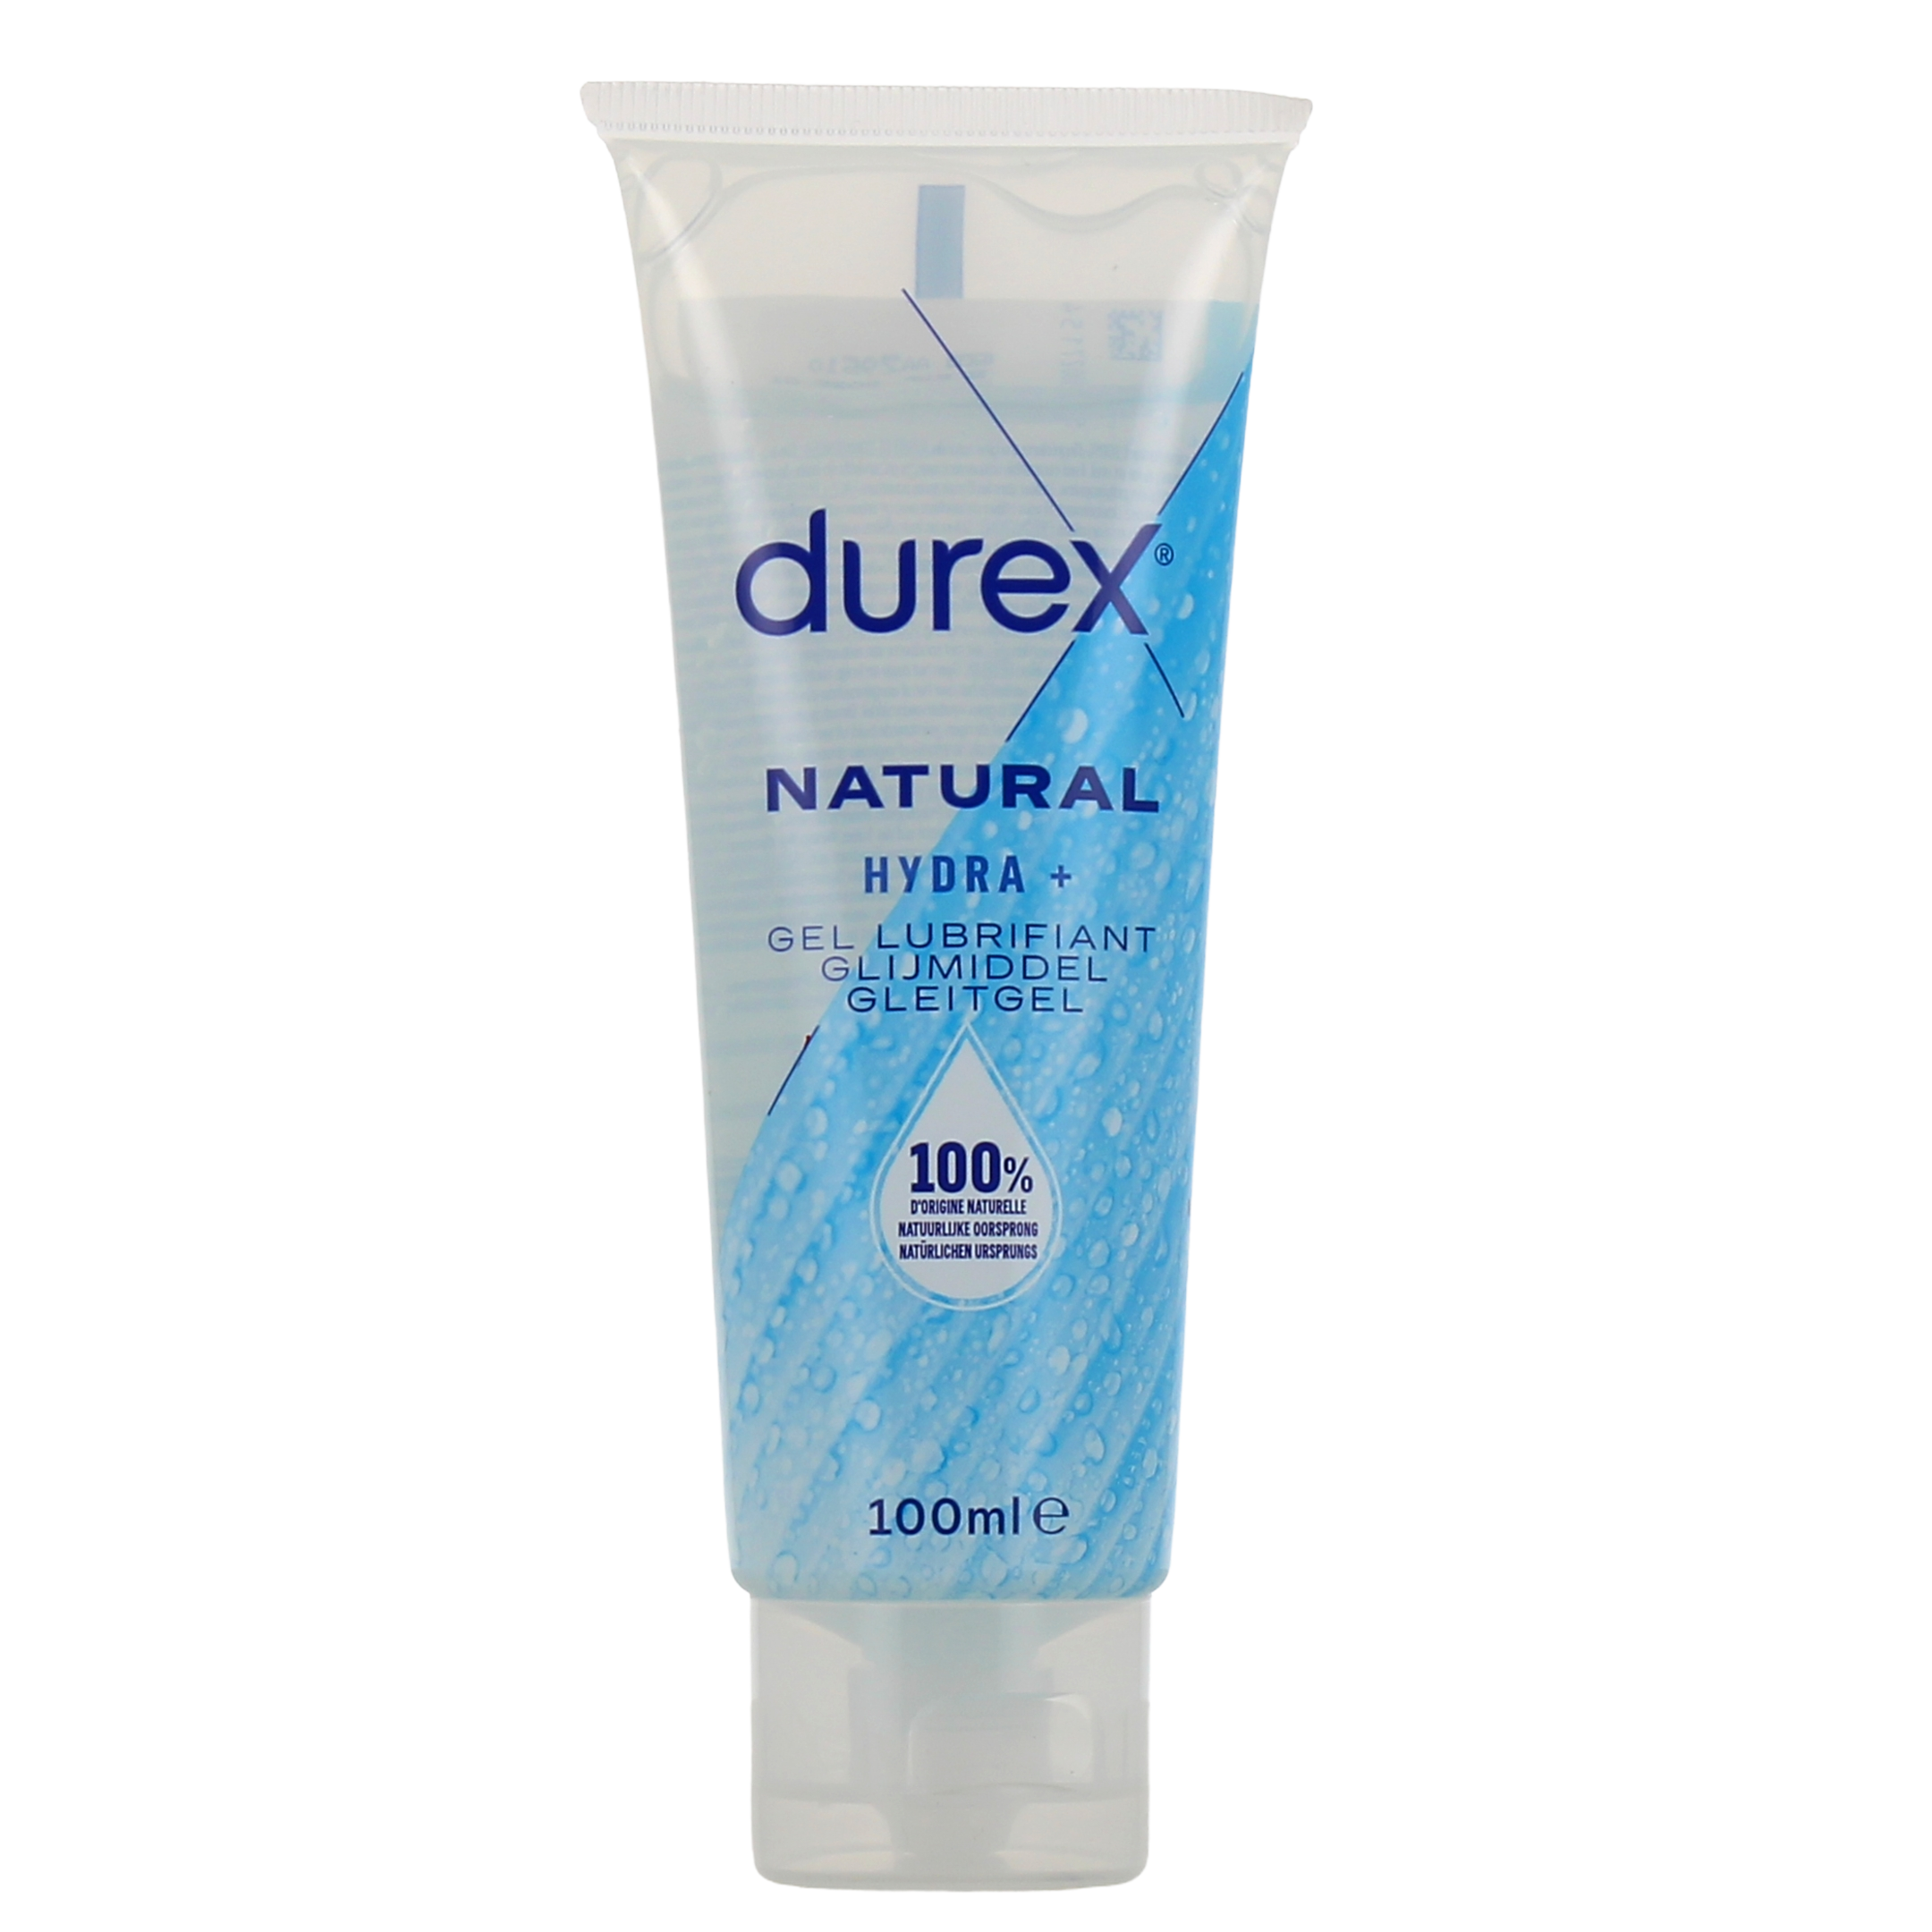 Gel lubrifiant Durex Natural Hydra +